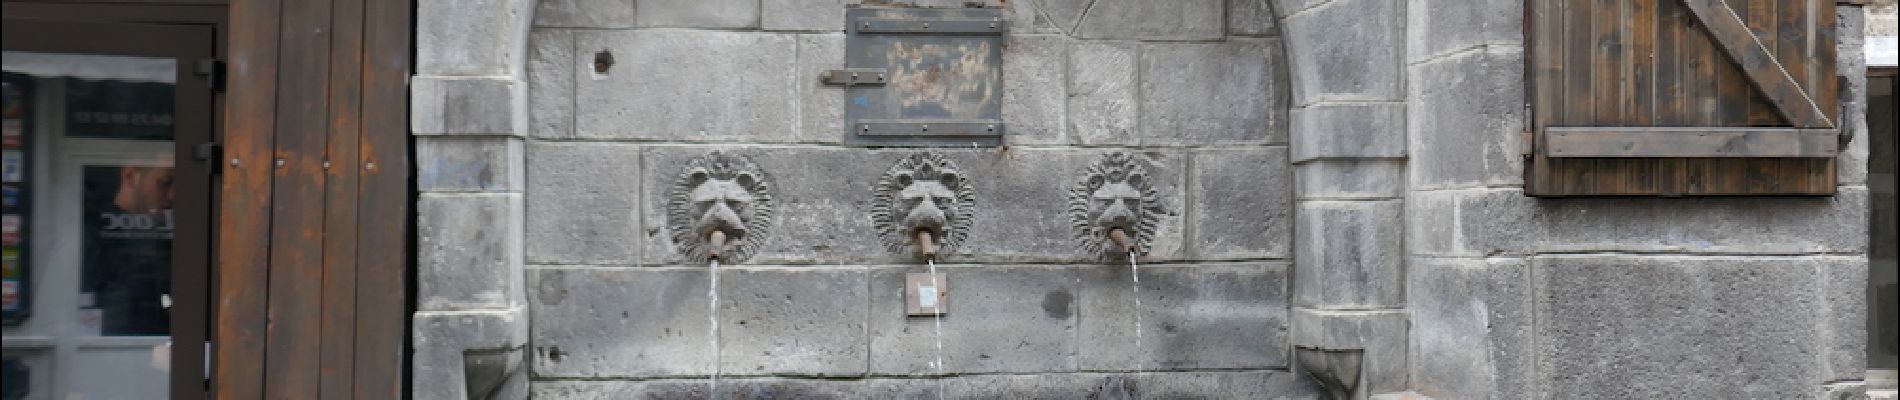 POI Clermont-Ferrand - fontaine des lions - Photo